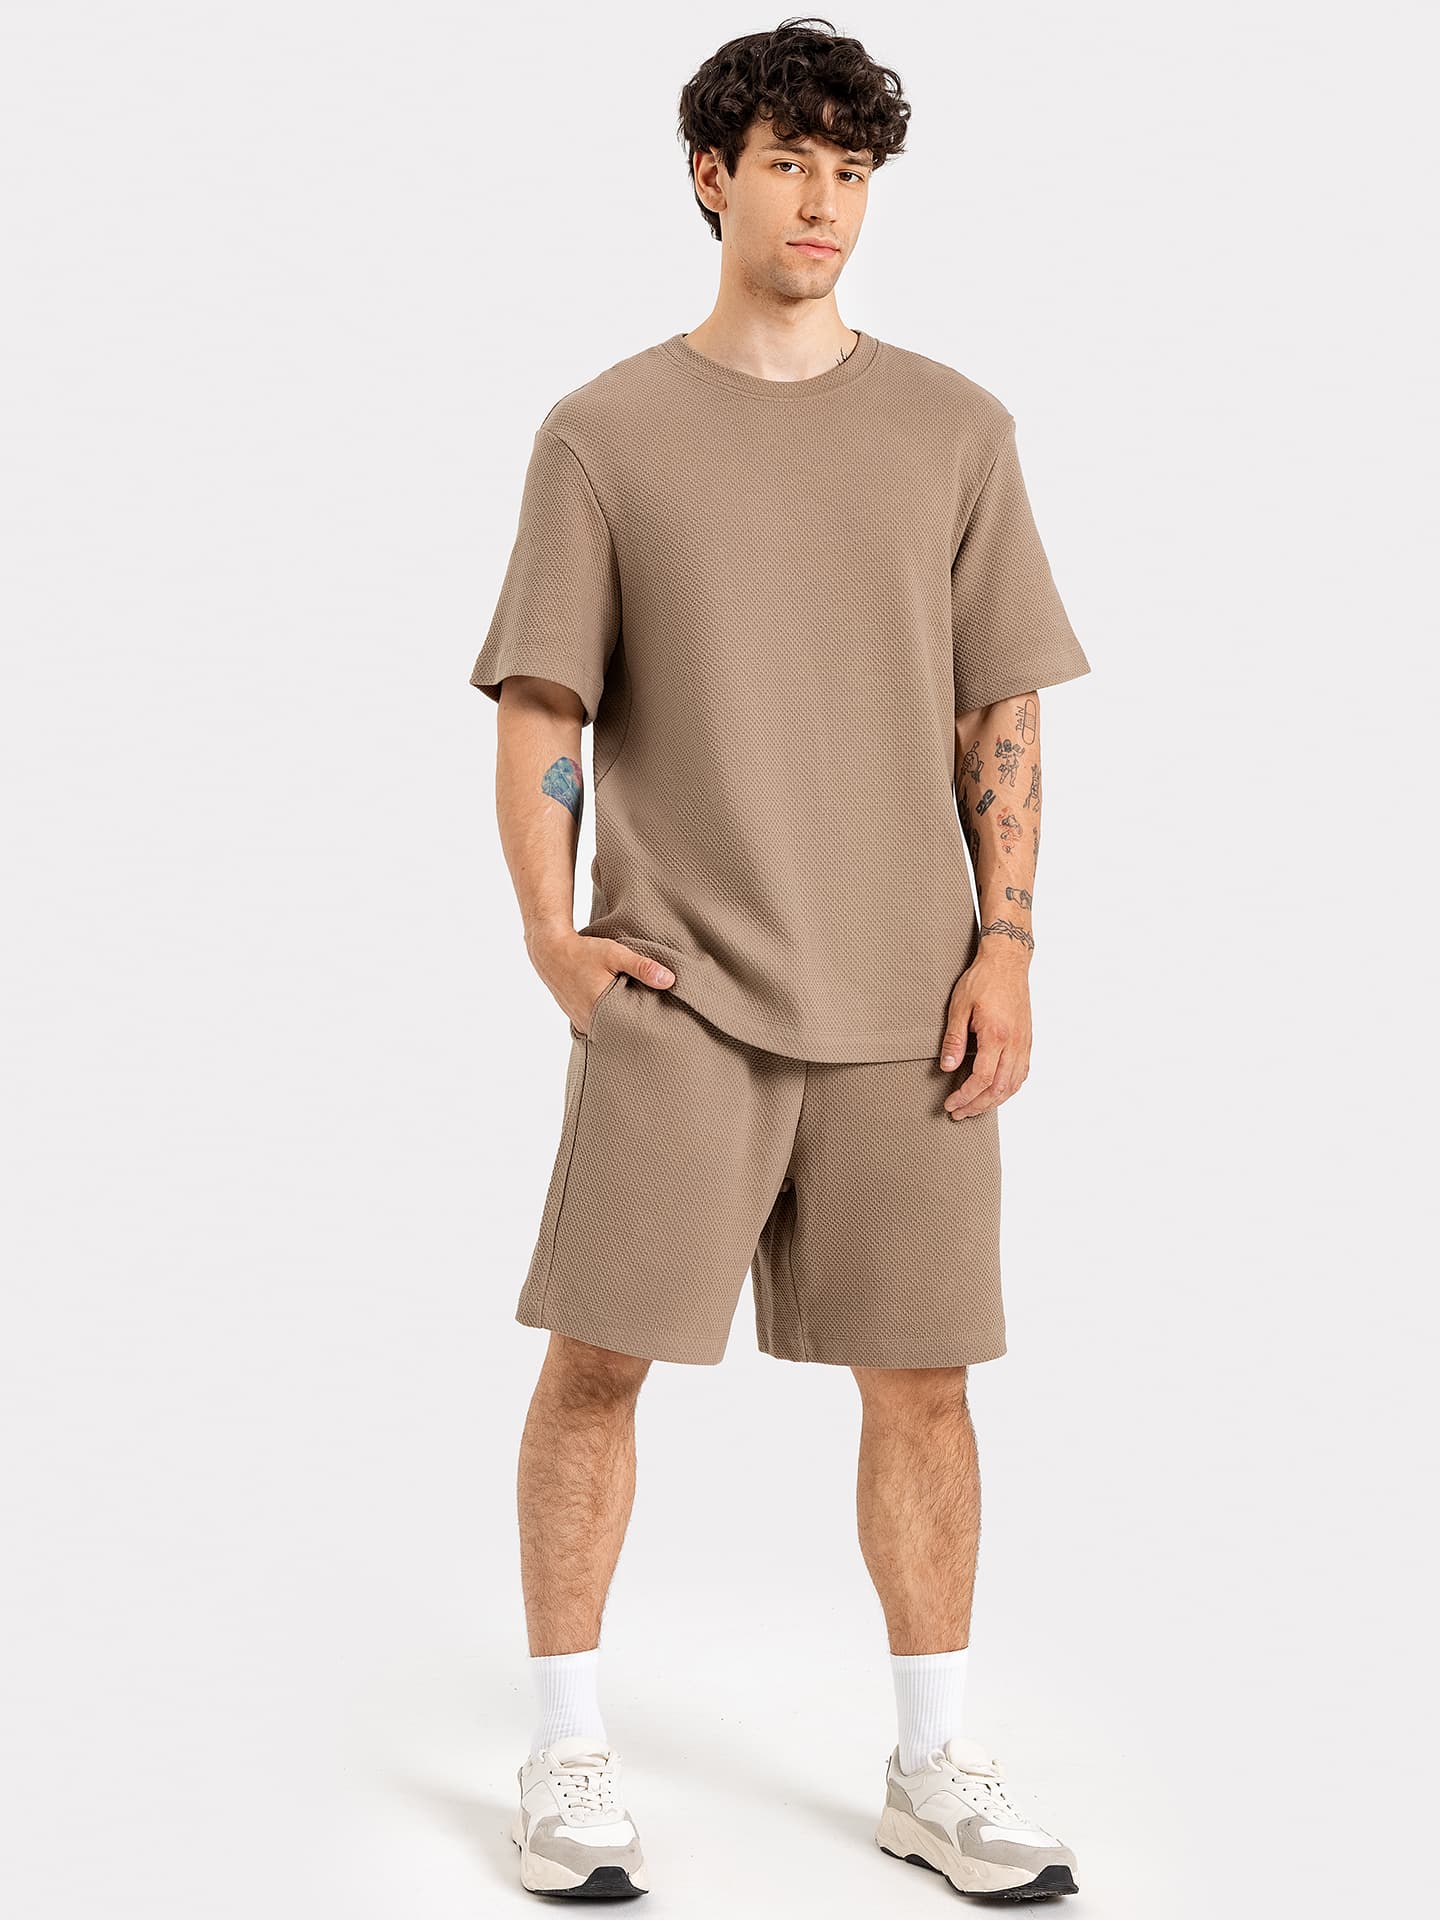 Комплект хлопковый мужской (футболка, шорты) светло-коричневый